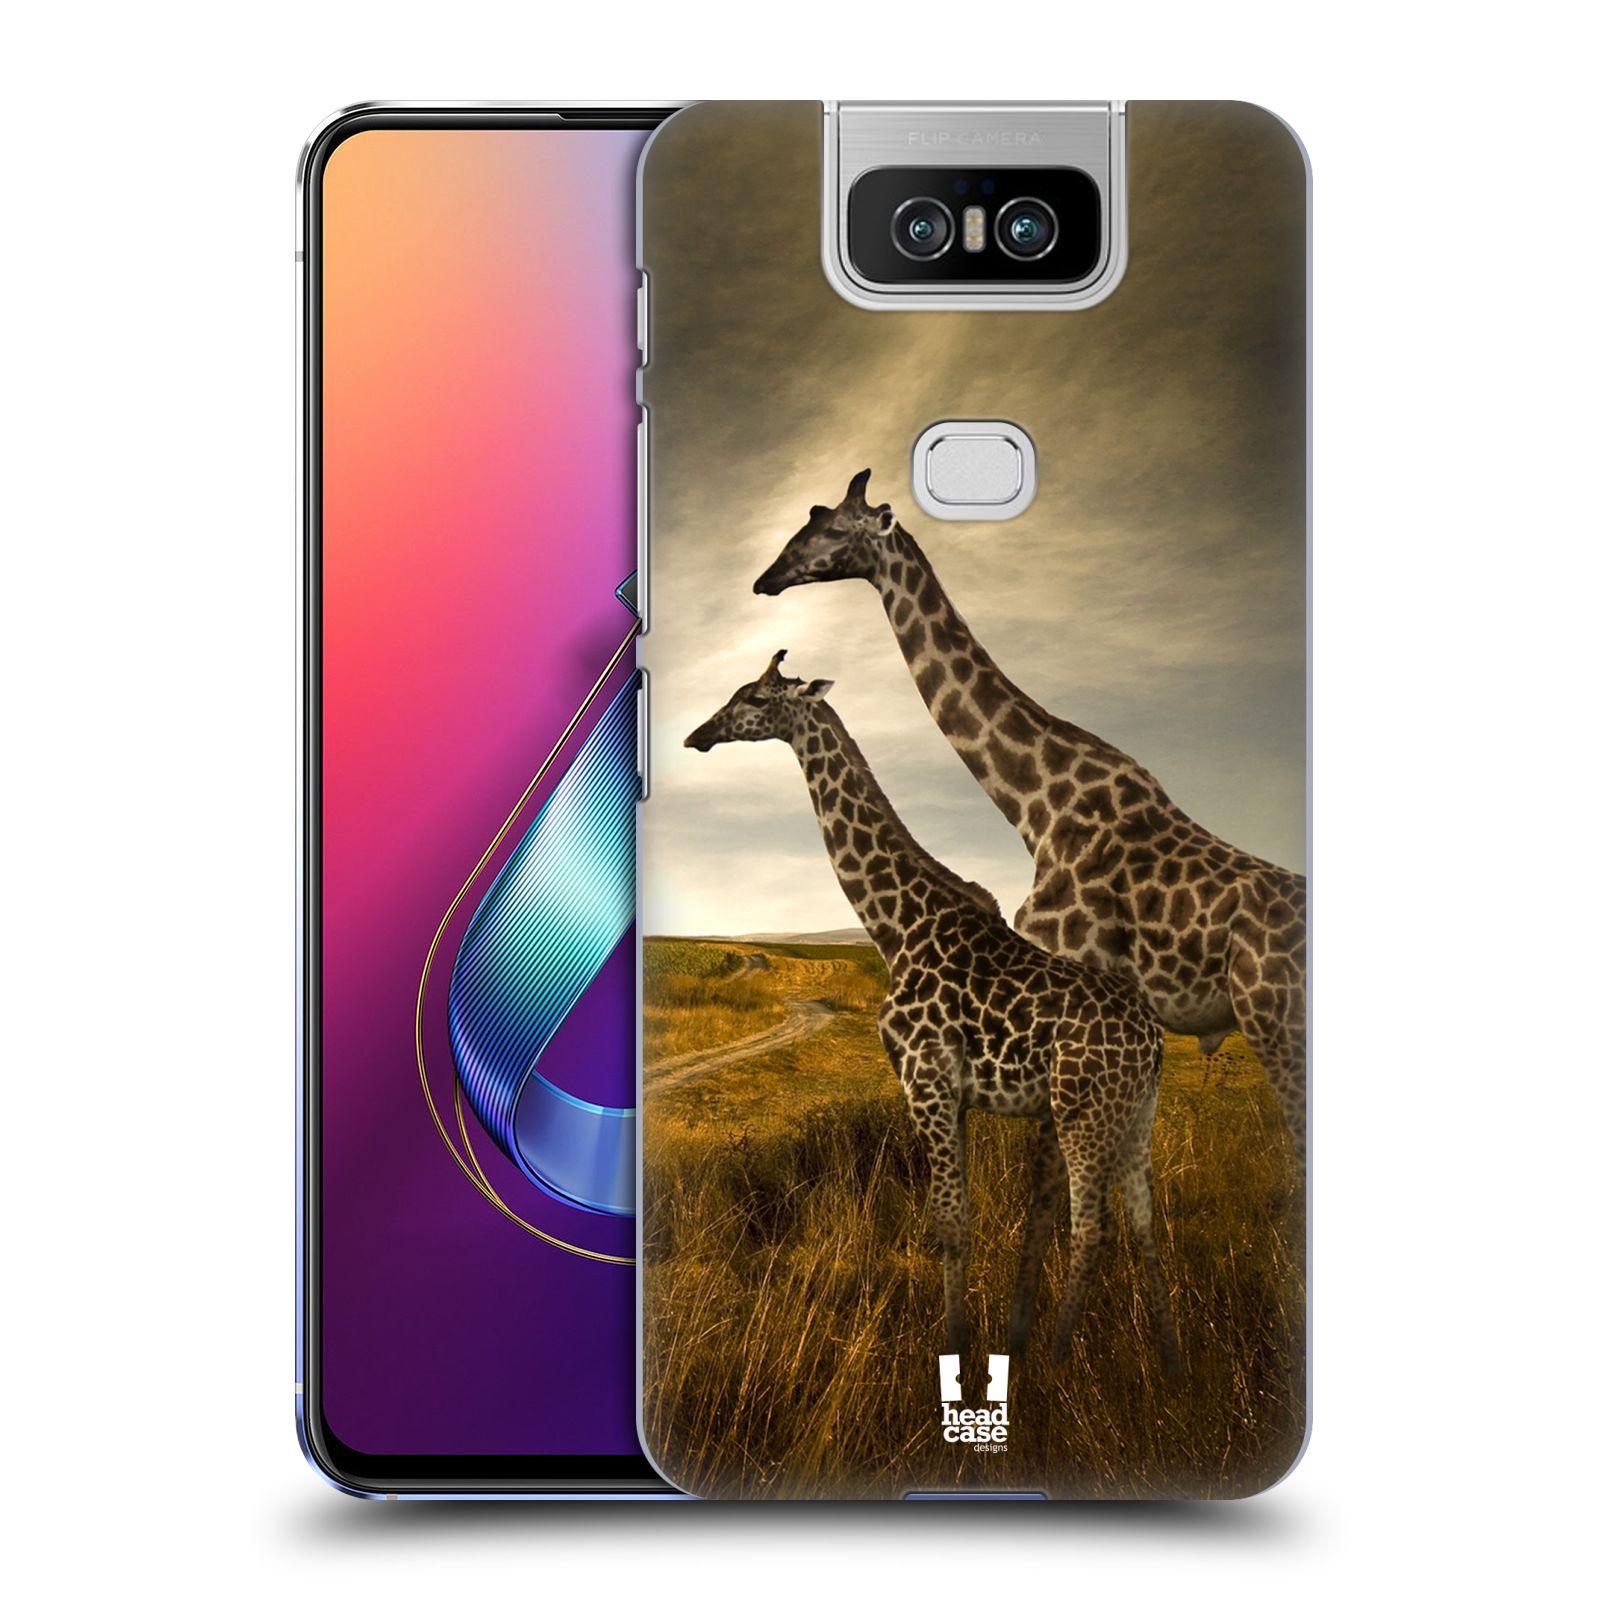 Zadní obal pro mobil Asus Zenfone 6 ZS630KL - HEAD CASE - Svět zvířat žirafy